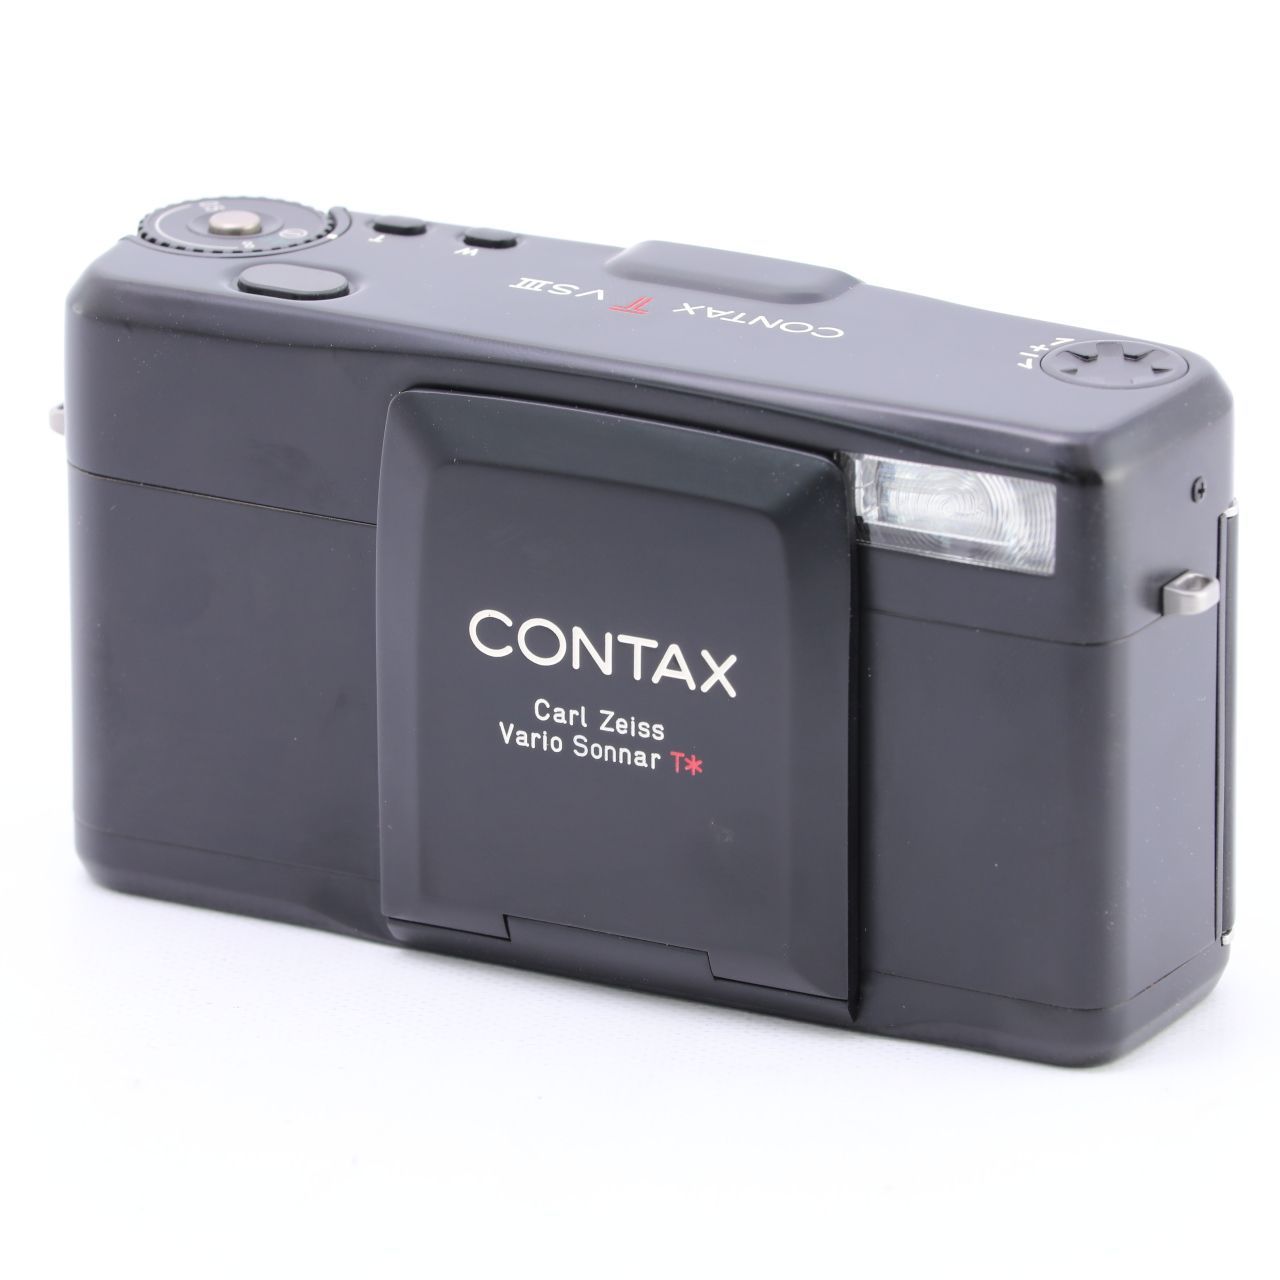 CONTAX コンタックス TVS III ブラック コンパクトフィルムカメラ 